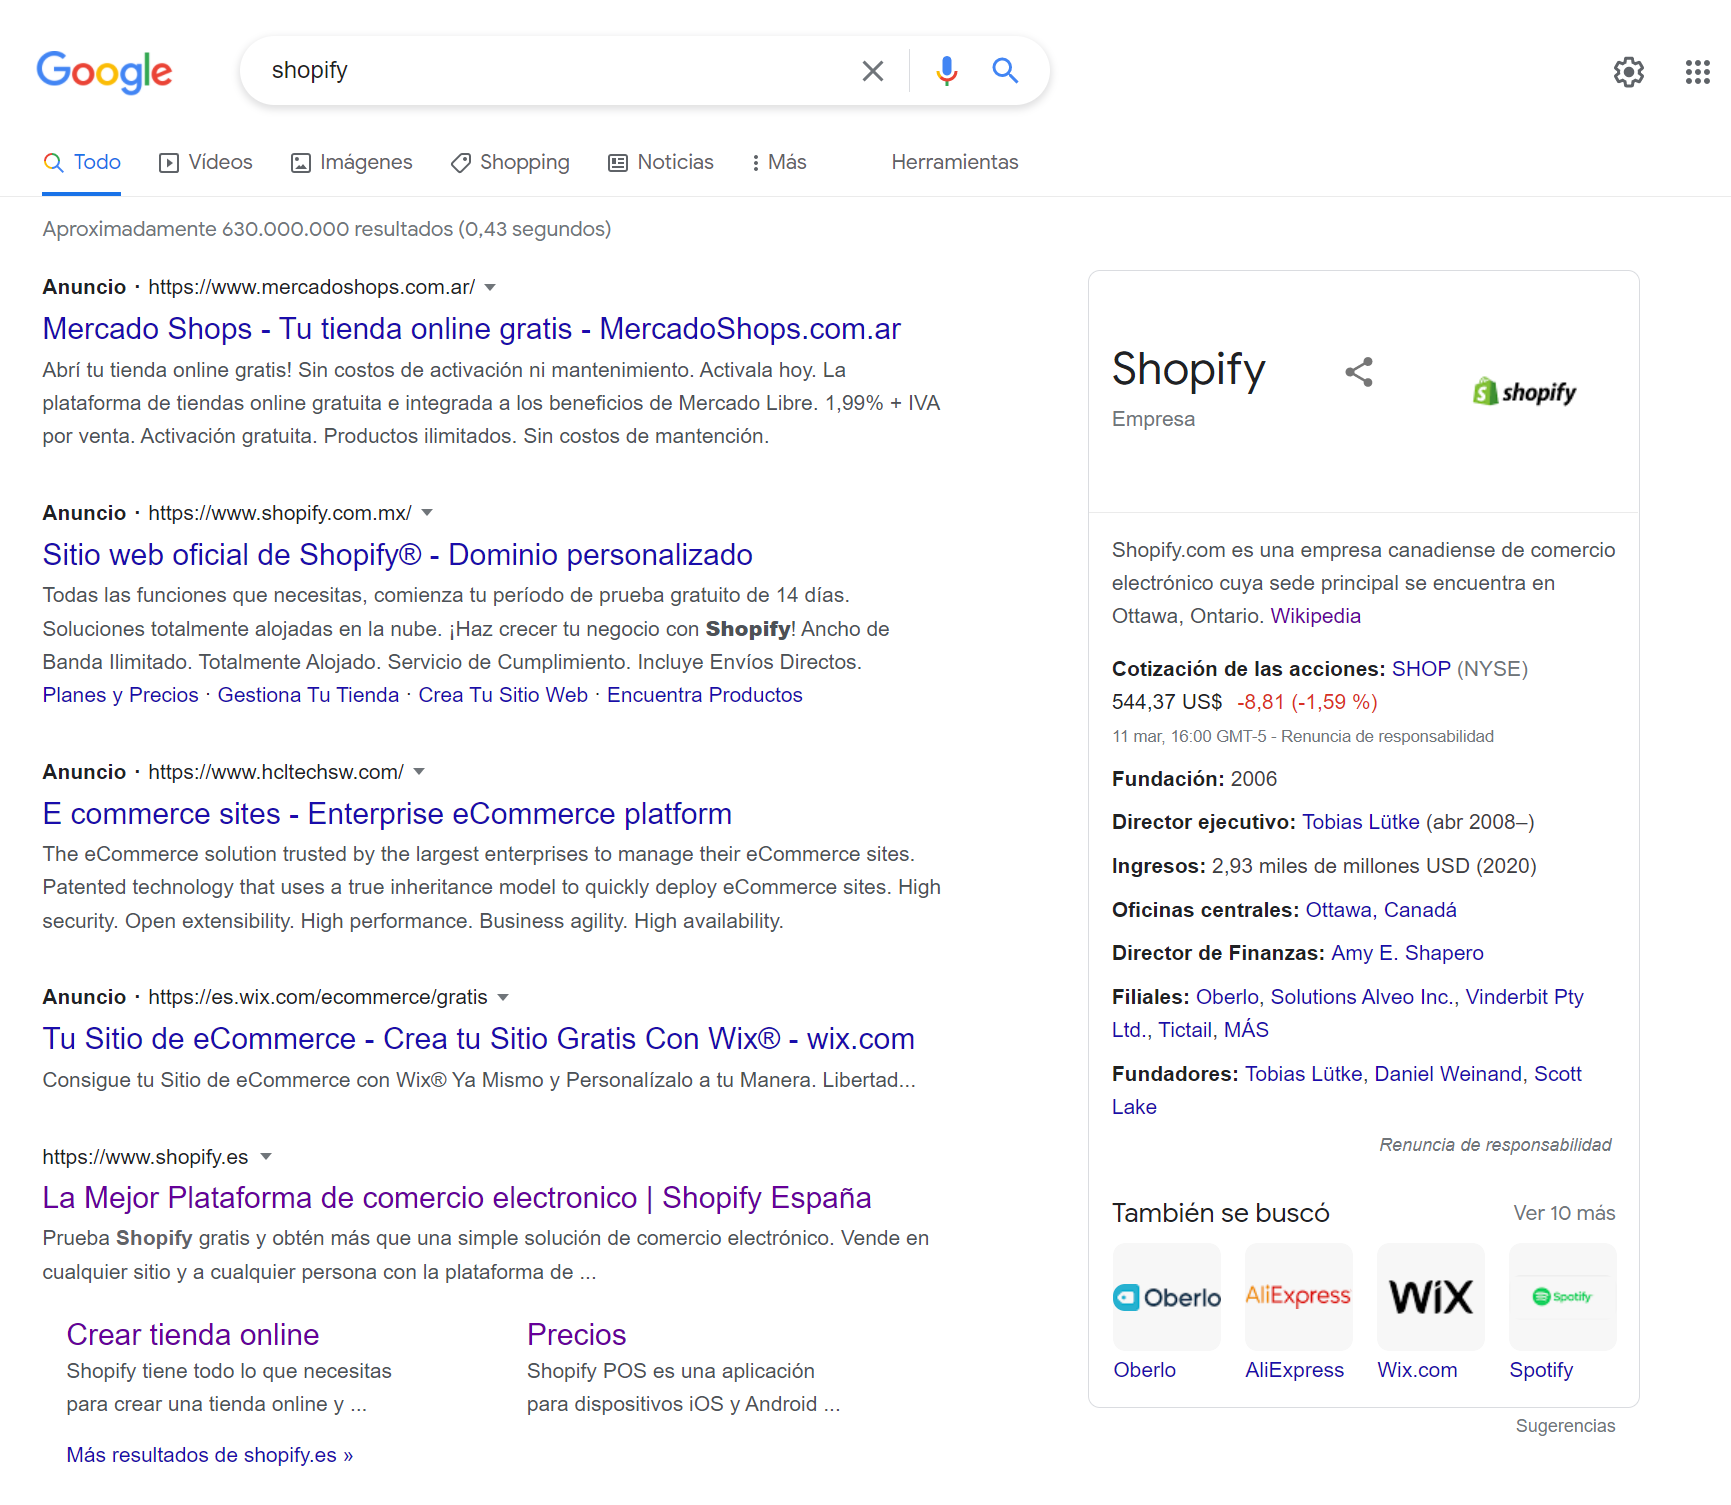 Shopify SERP Google ejemplo 